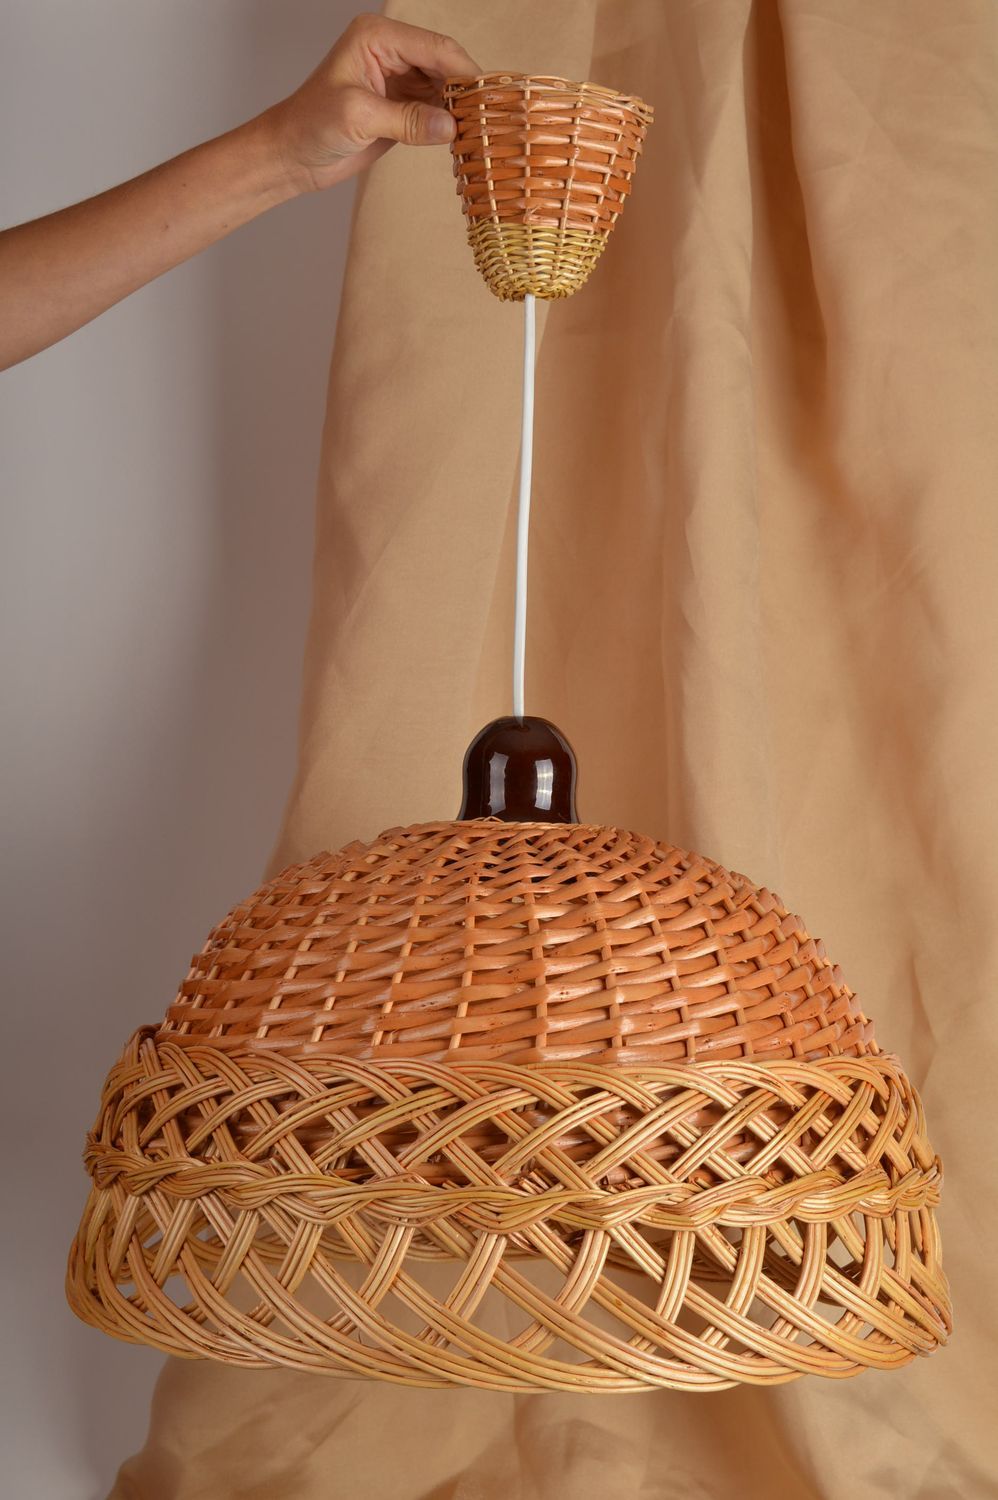 Плетеная люстра ручной работы потолочный светильник люстра для кухни красивая фото 1